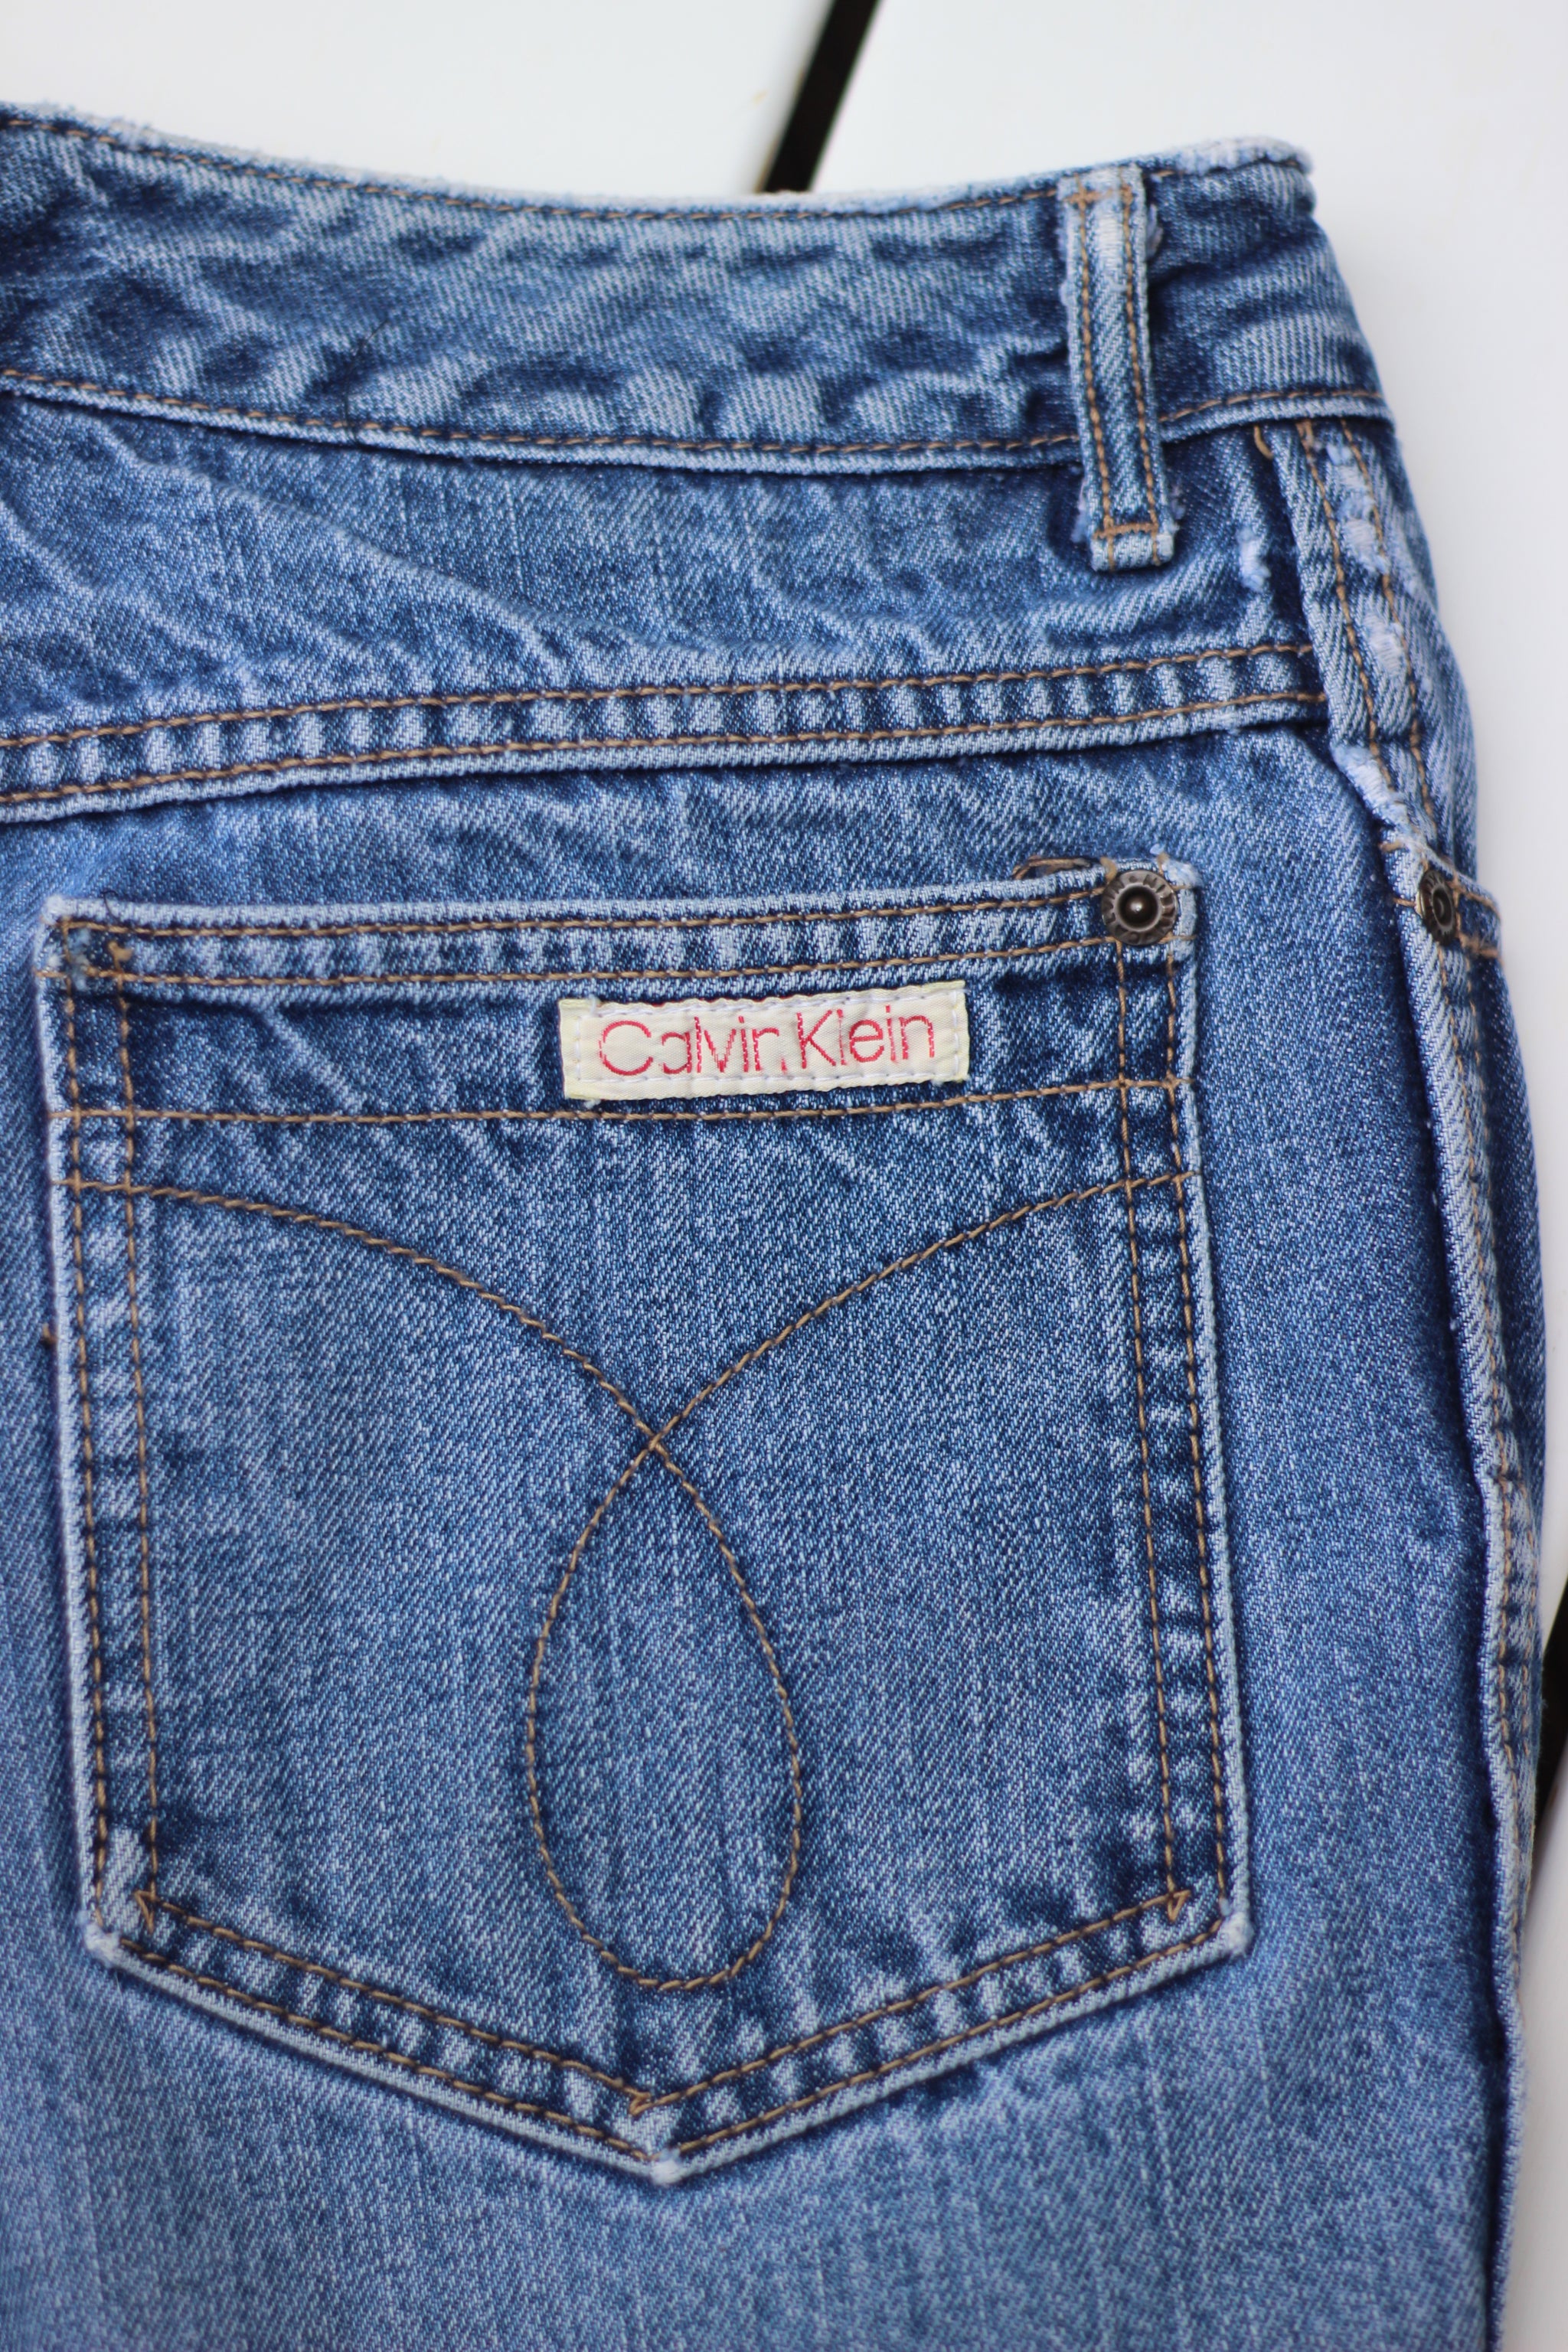 Vintage Calvin Klein Cutoff Denim Shorts (M/L)